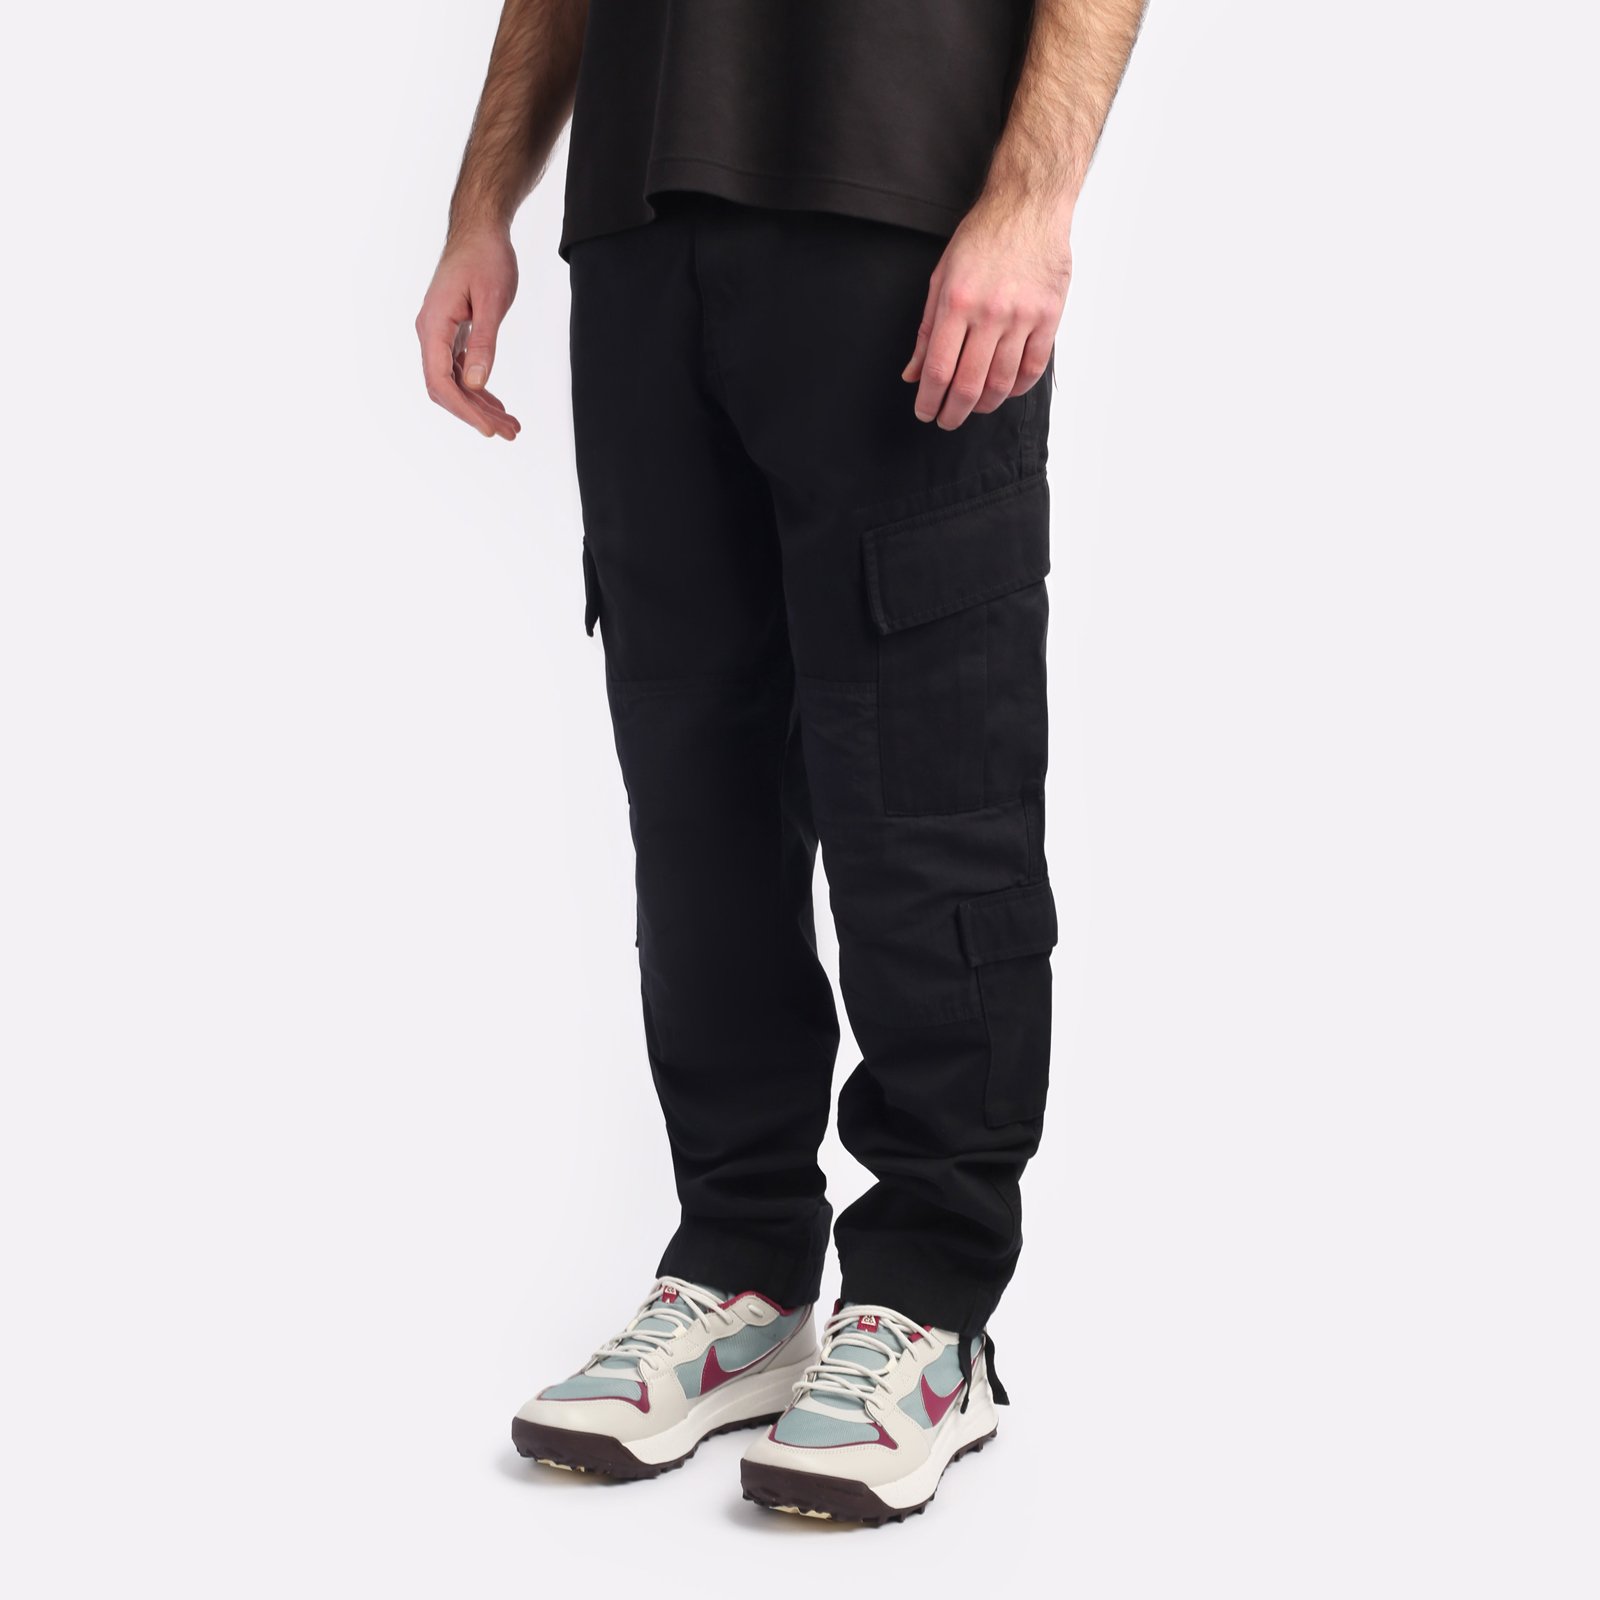 мужские брюки Alpha Industries ACU Pant  (MBA52501C1-black)  - цена, описание, фото 3